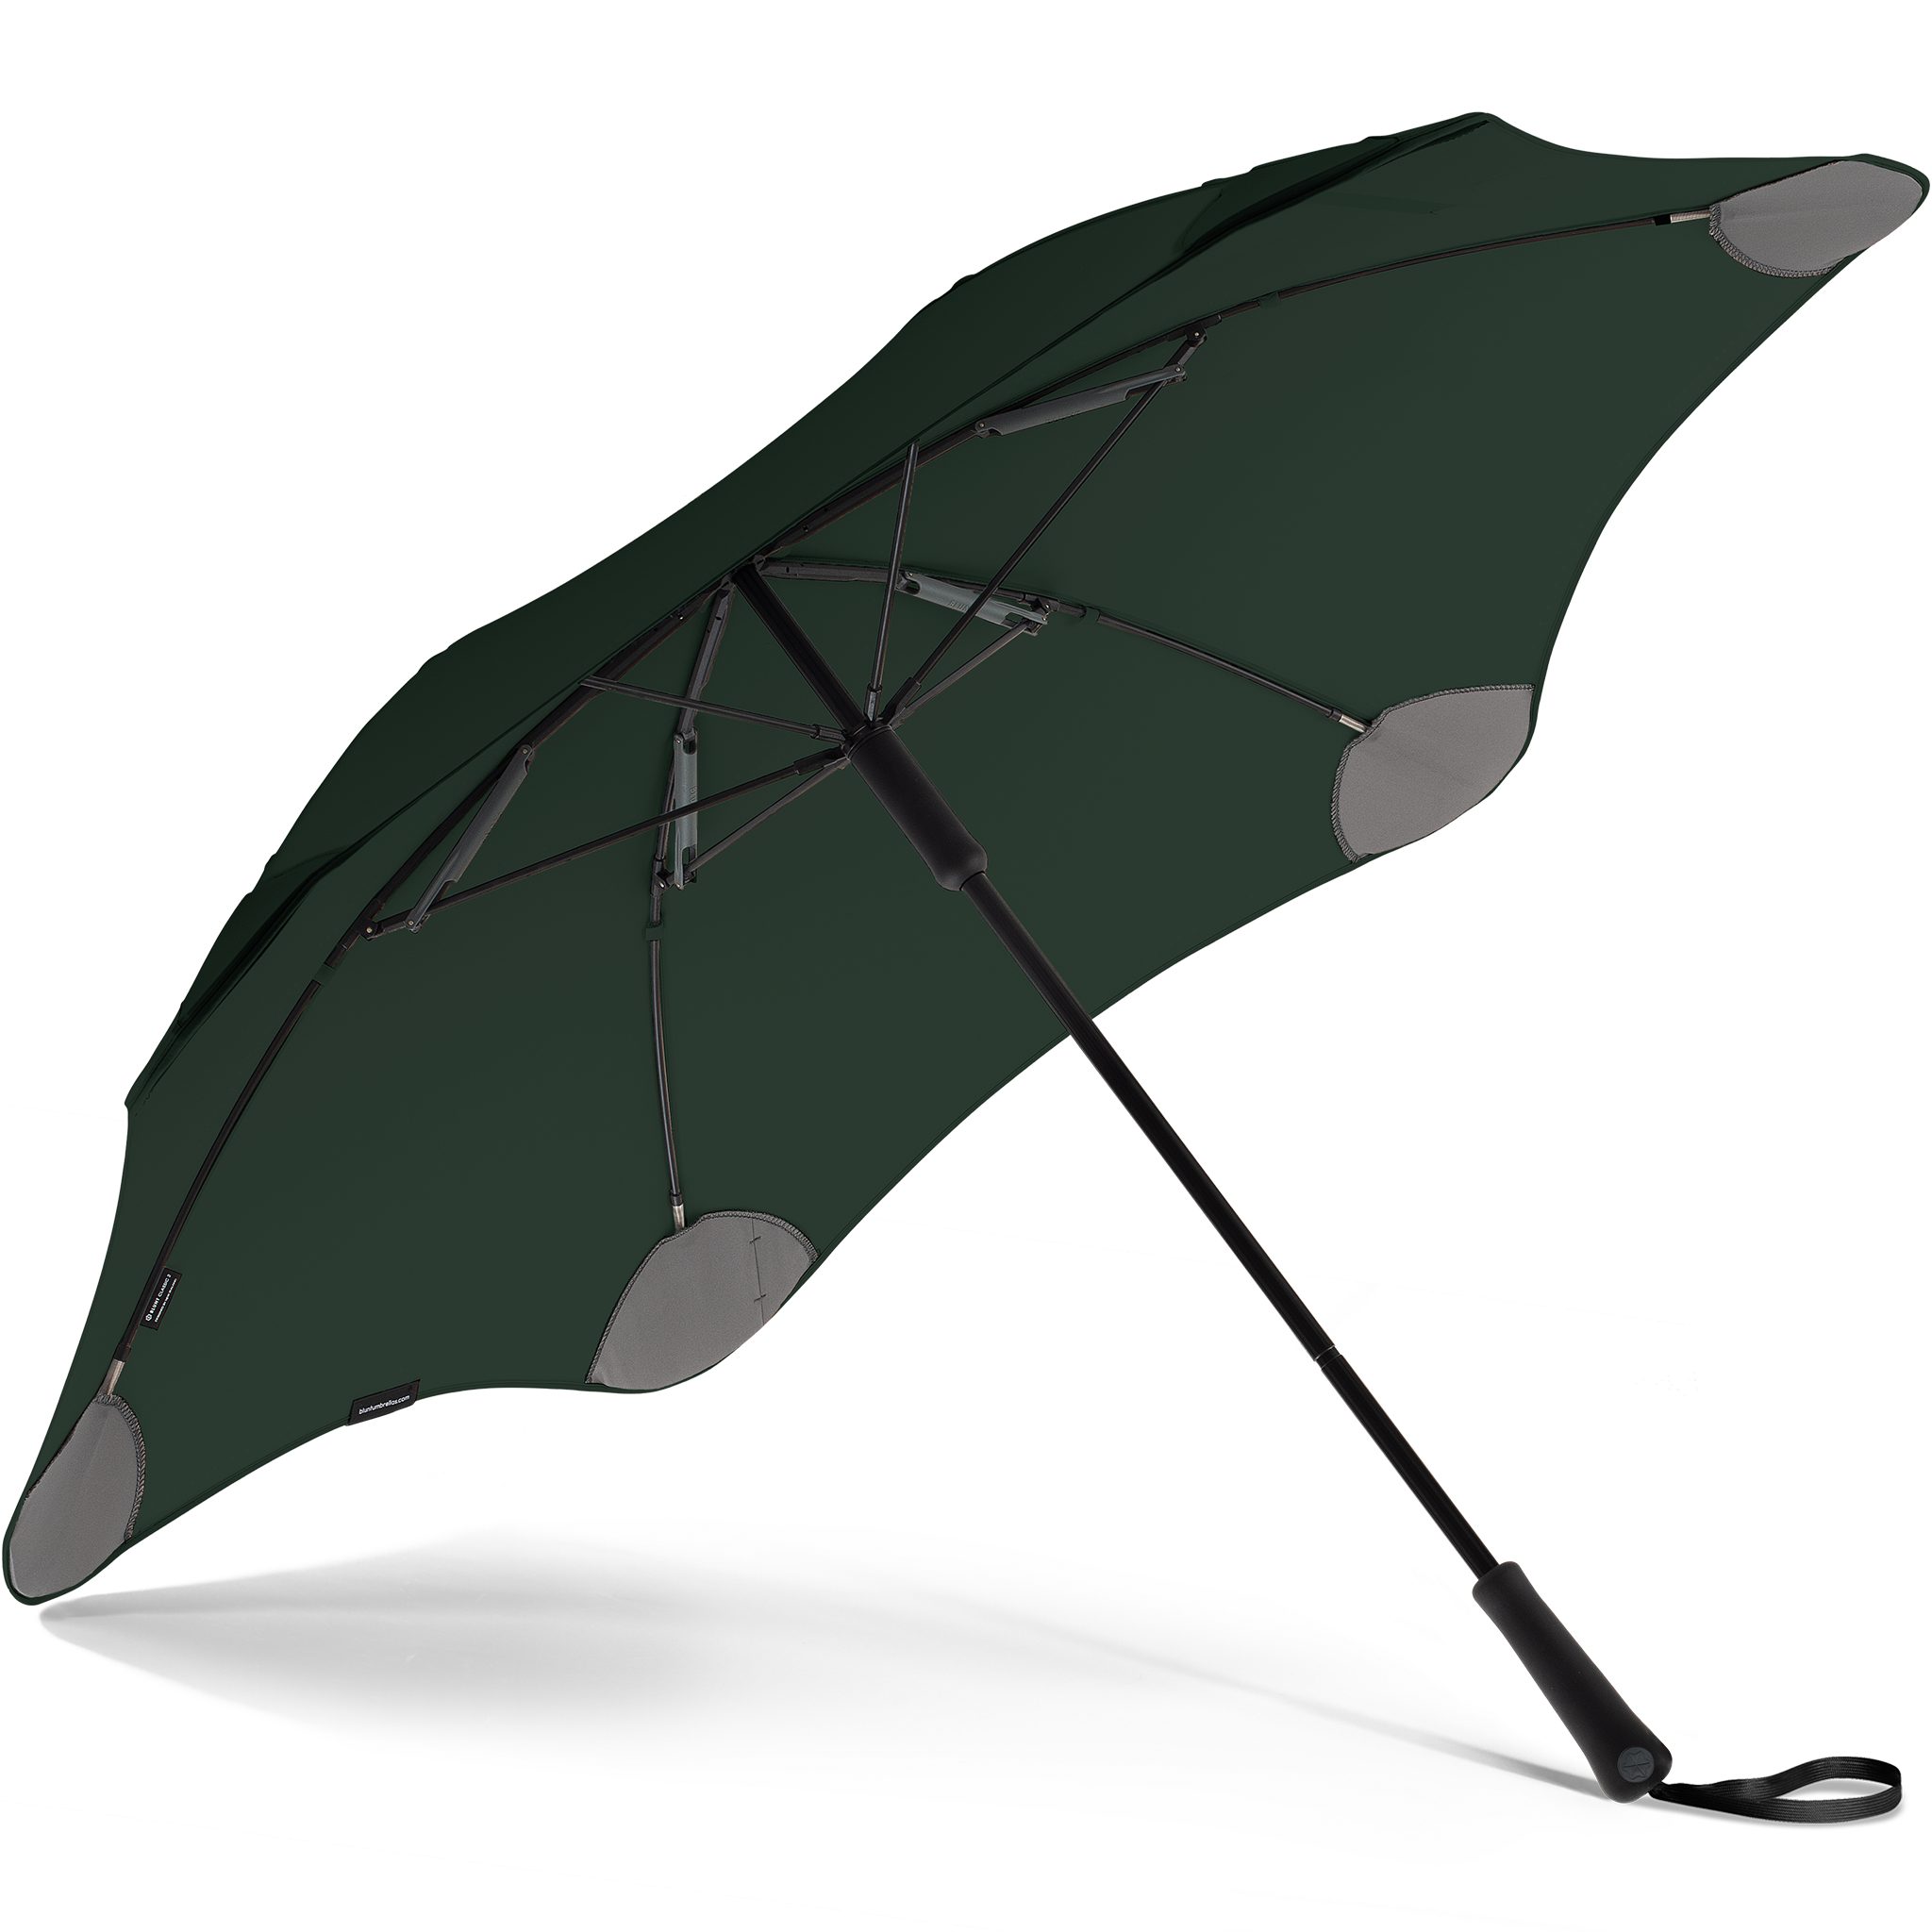 Stockregenschirm dunkelgrün Blunt Silhouette einzigartige Technologie, herausragende patentierte Classic,